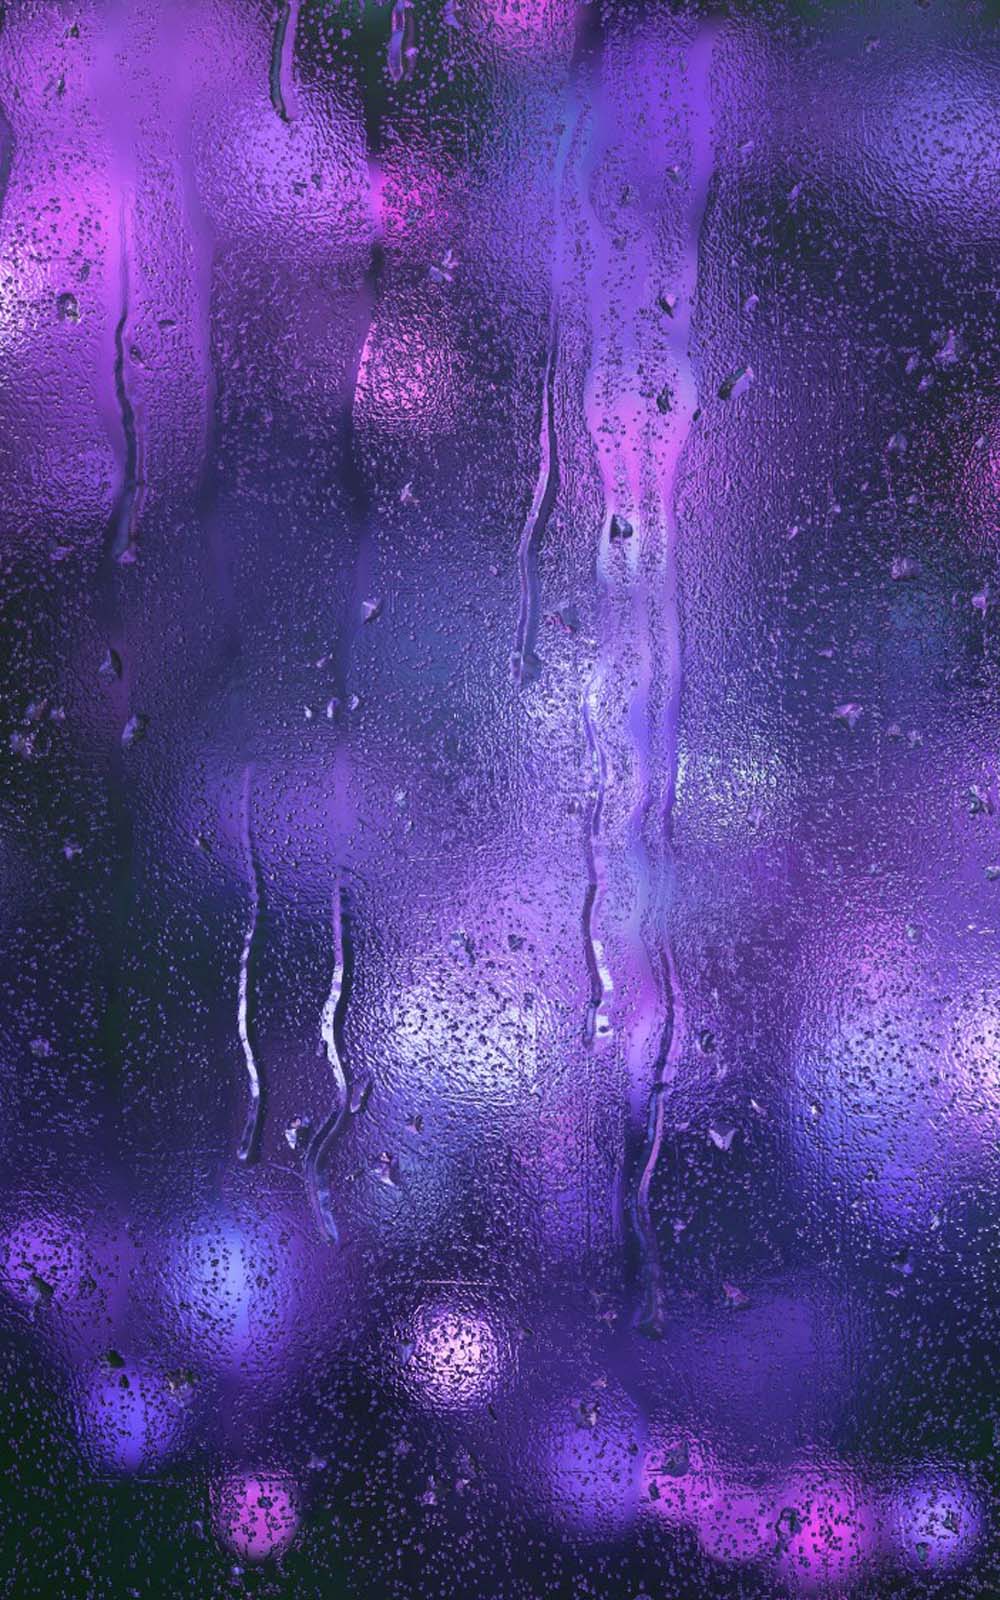 pioggia wallpaper hd per cellulare,viola,viola,disegno grafico,cielo,design